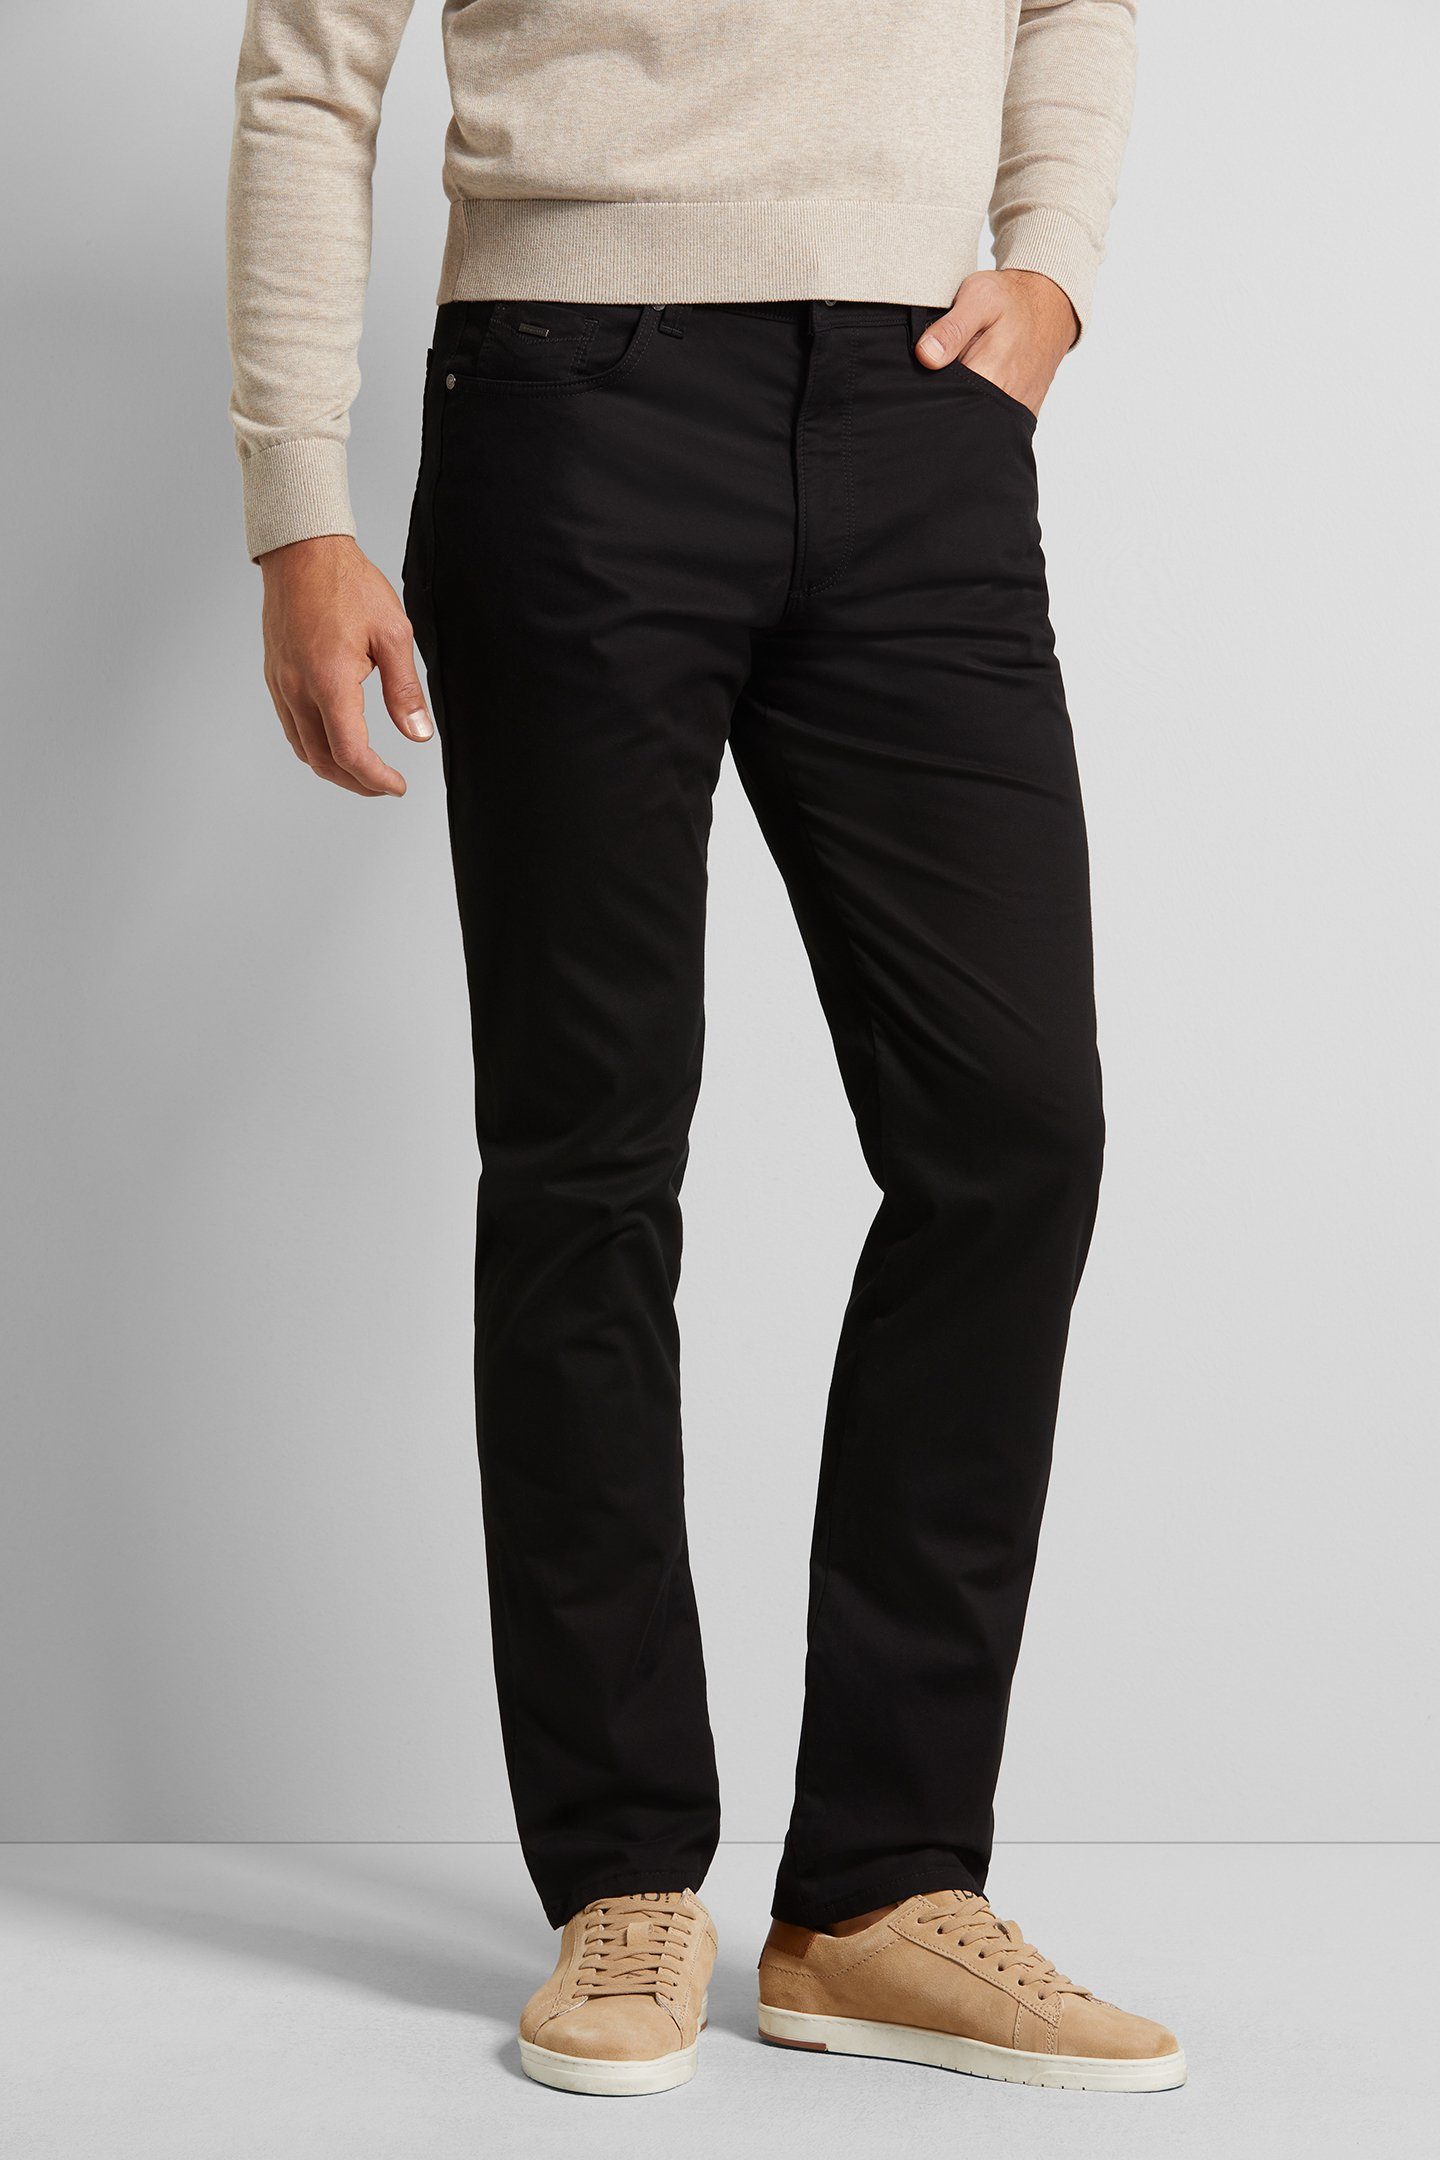 bugatti 5-Pocket-Hose mit langanhaltender Farbechtheit schwarz